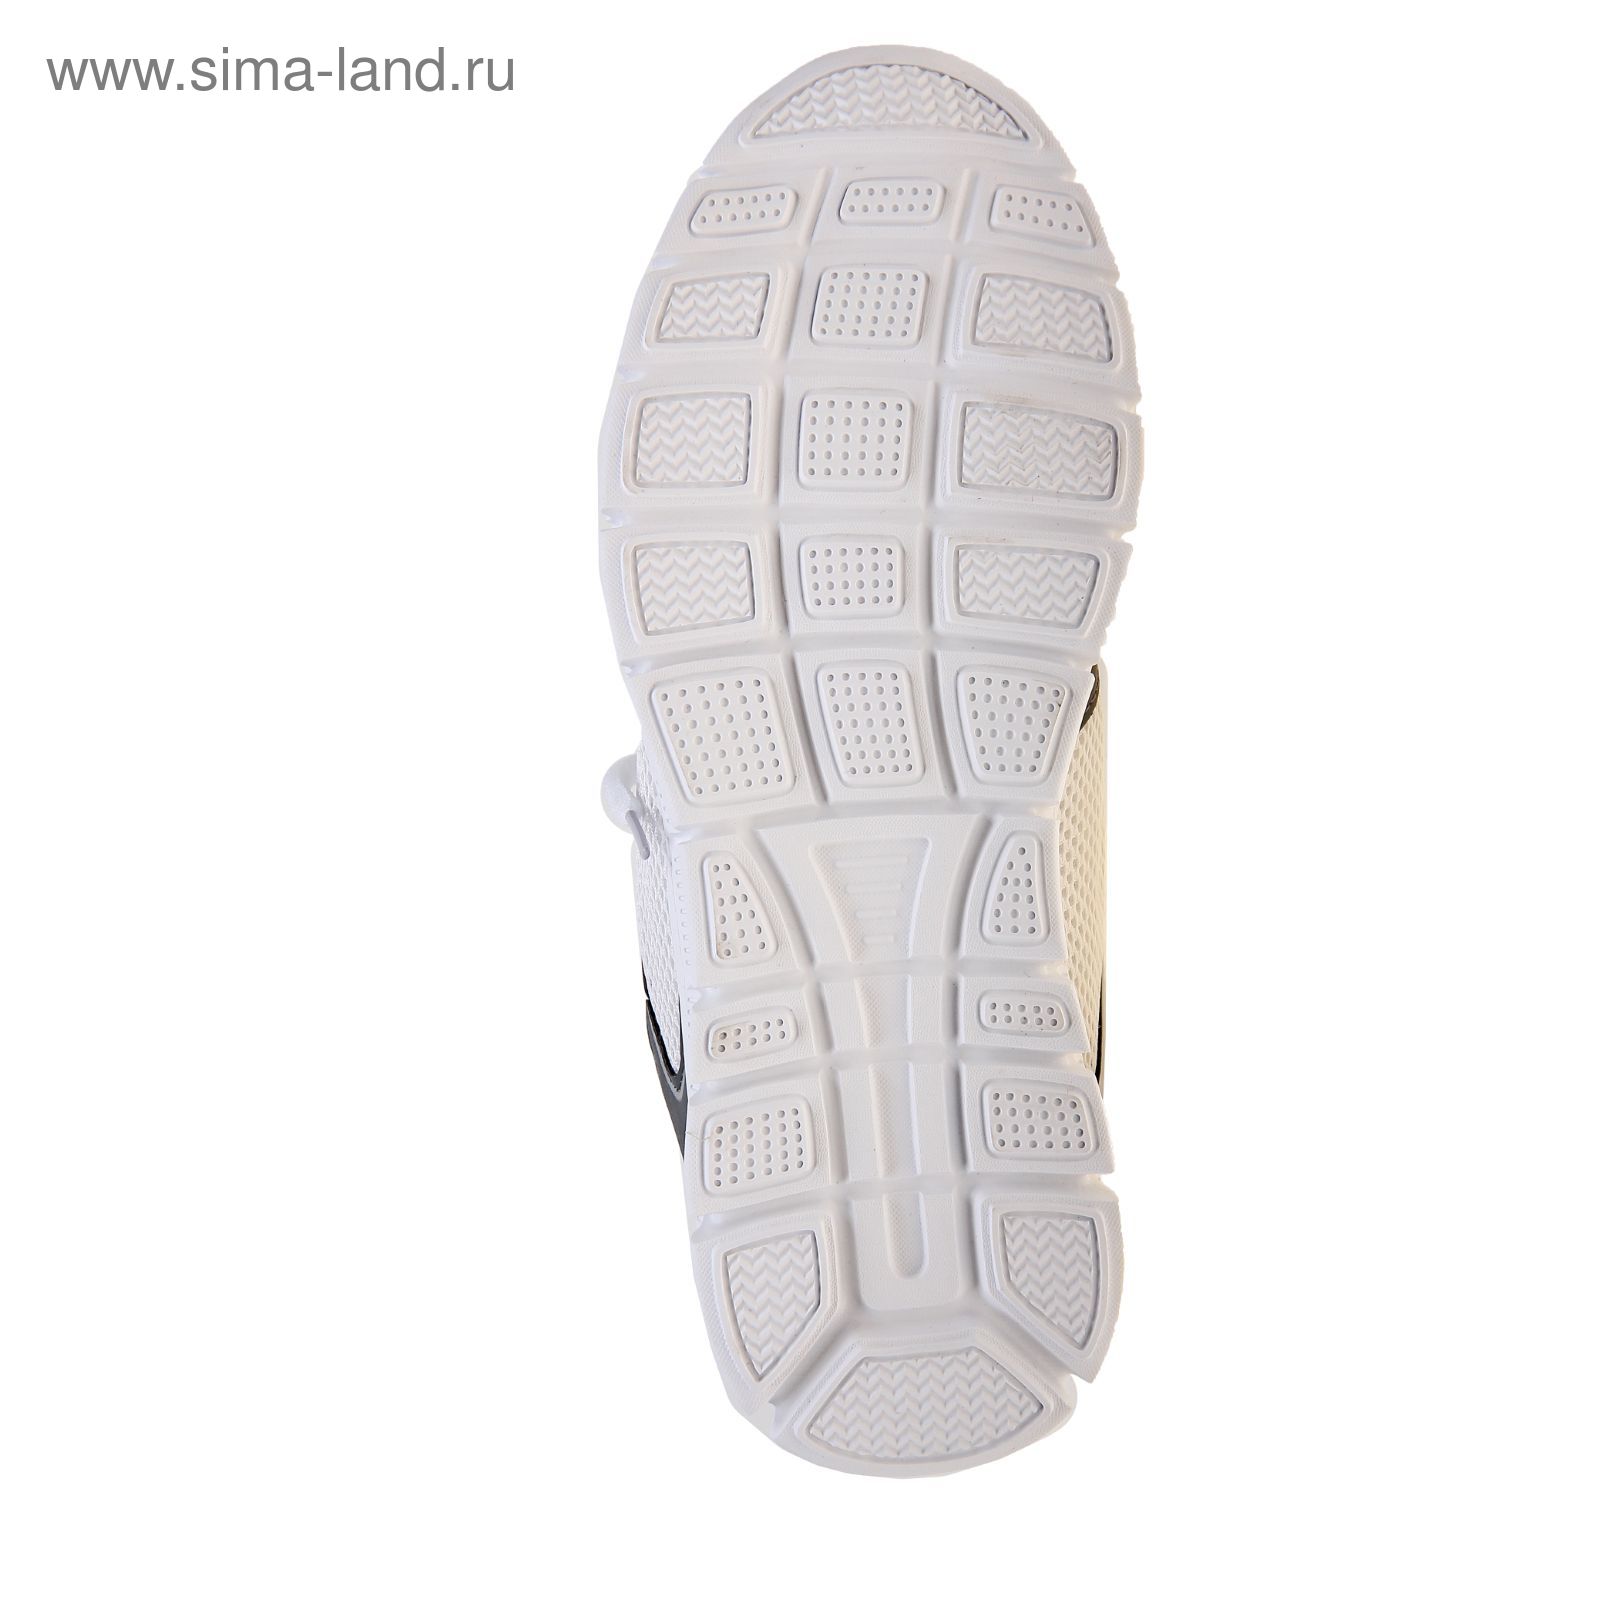 Кроссовки женские, цвет белый/серый, размер 40 (арт. LSW 0026-2-6)